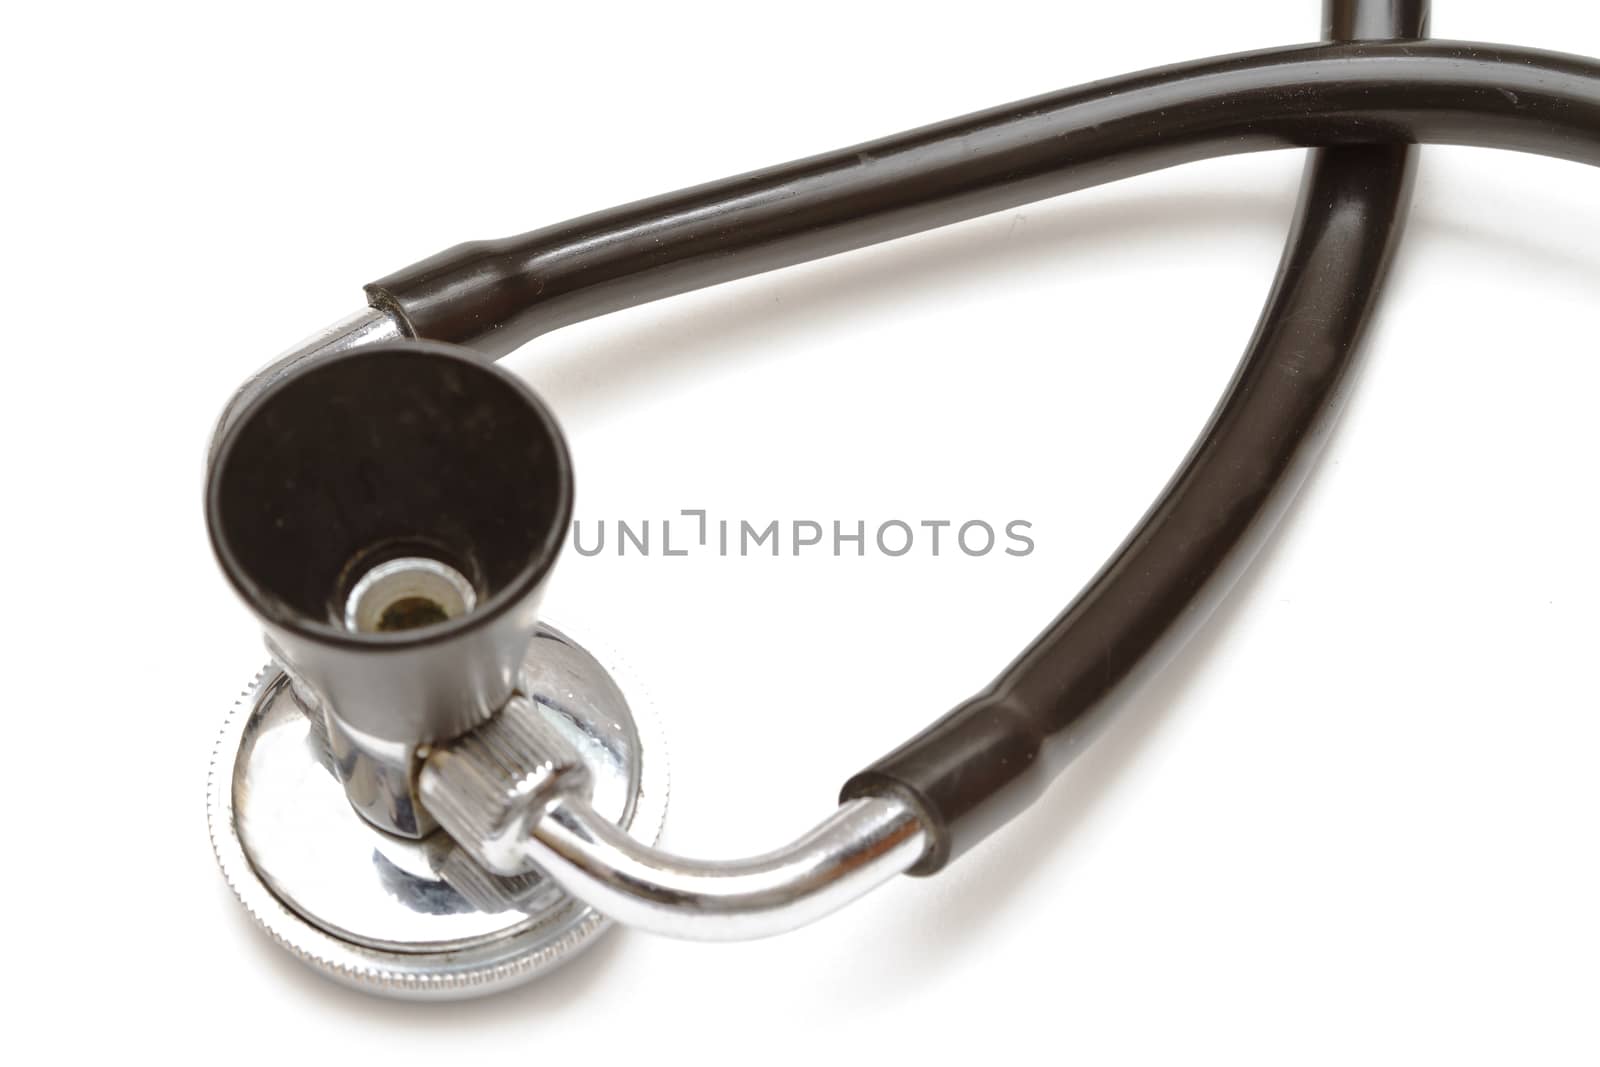 Medical stethoscope isolated on white background. Closeup